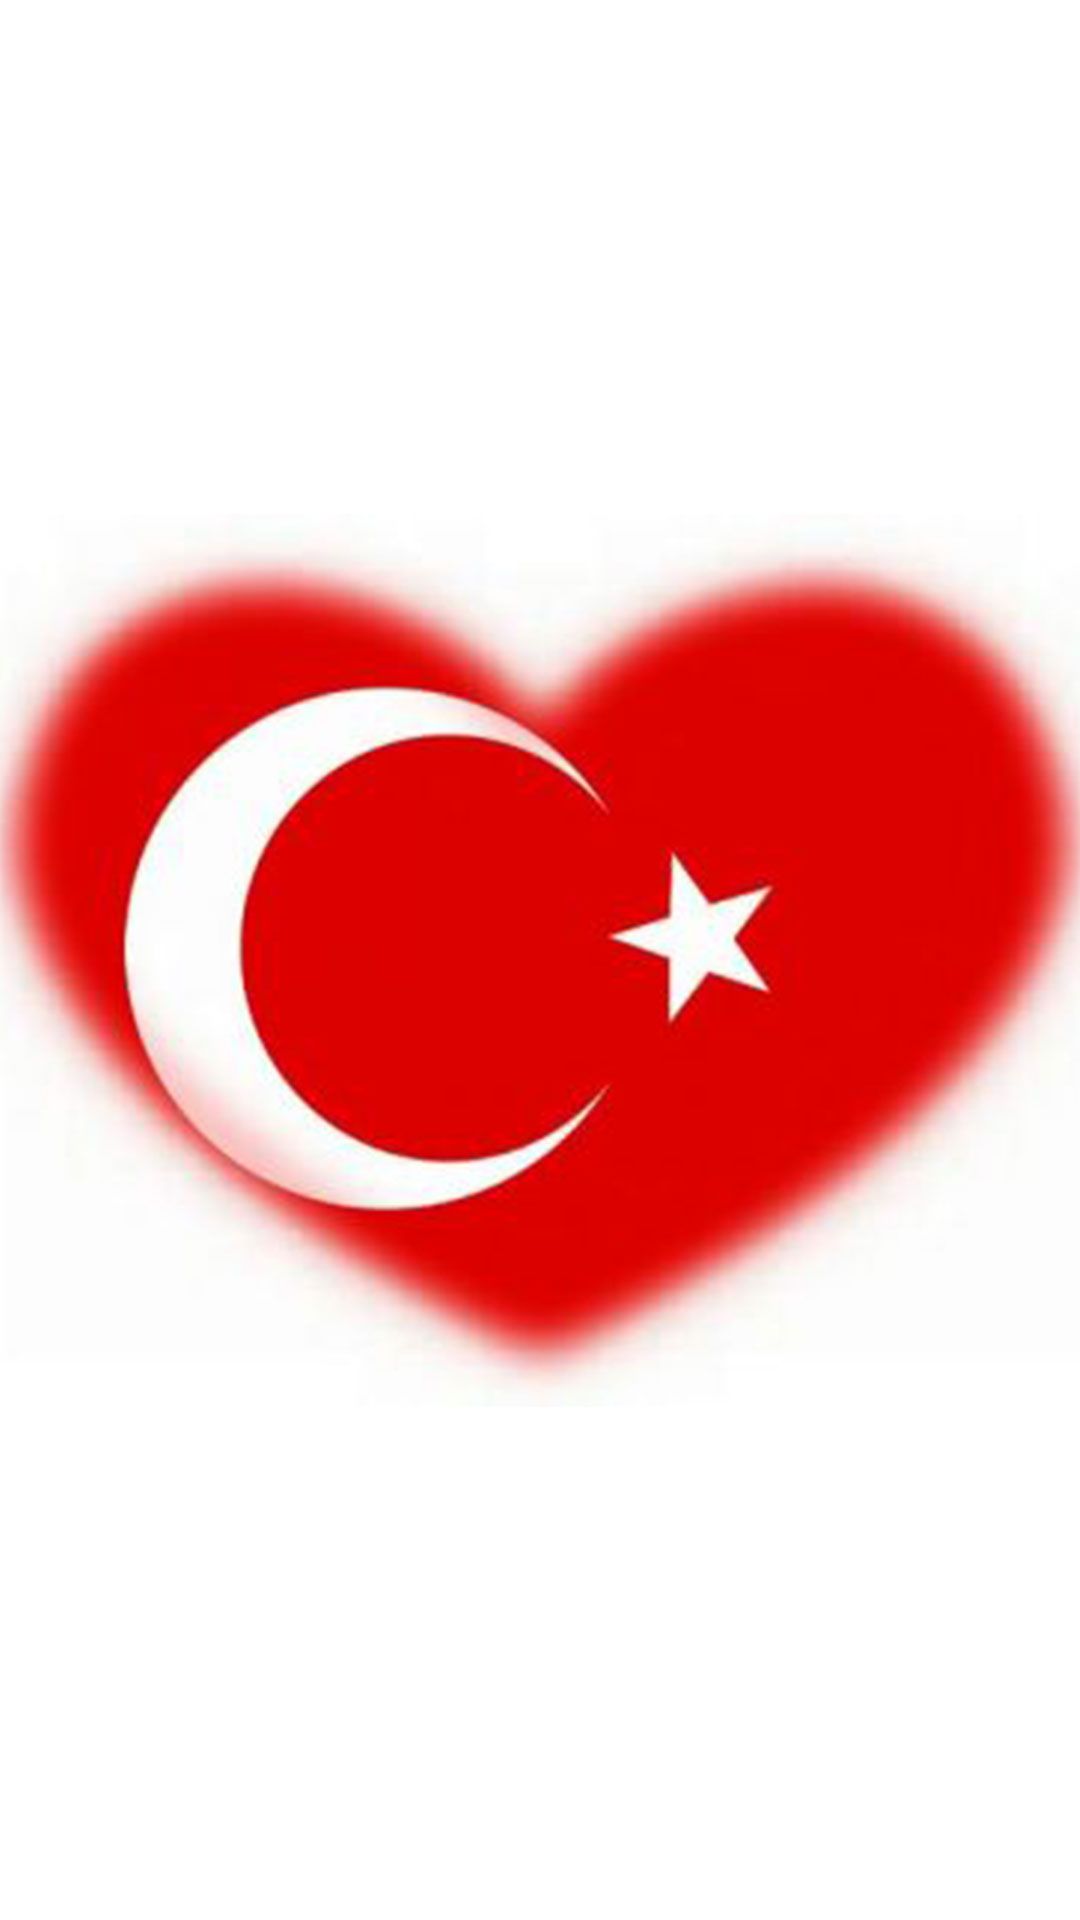 Kalpli turk bayragi 4